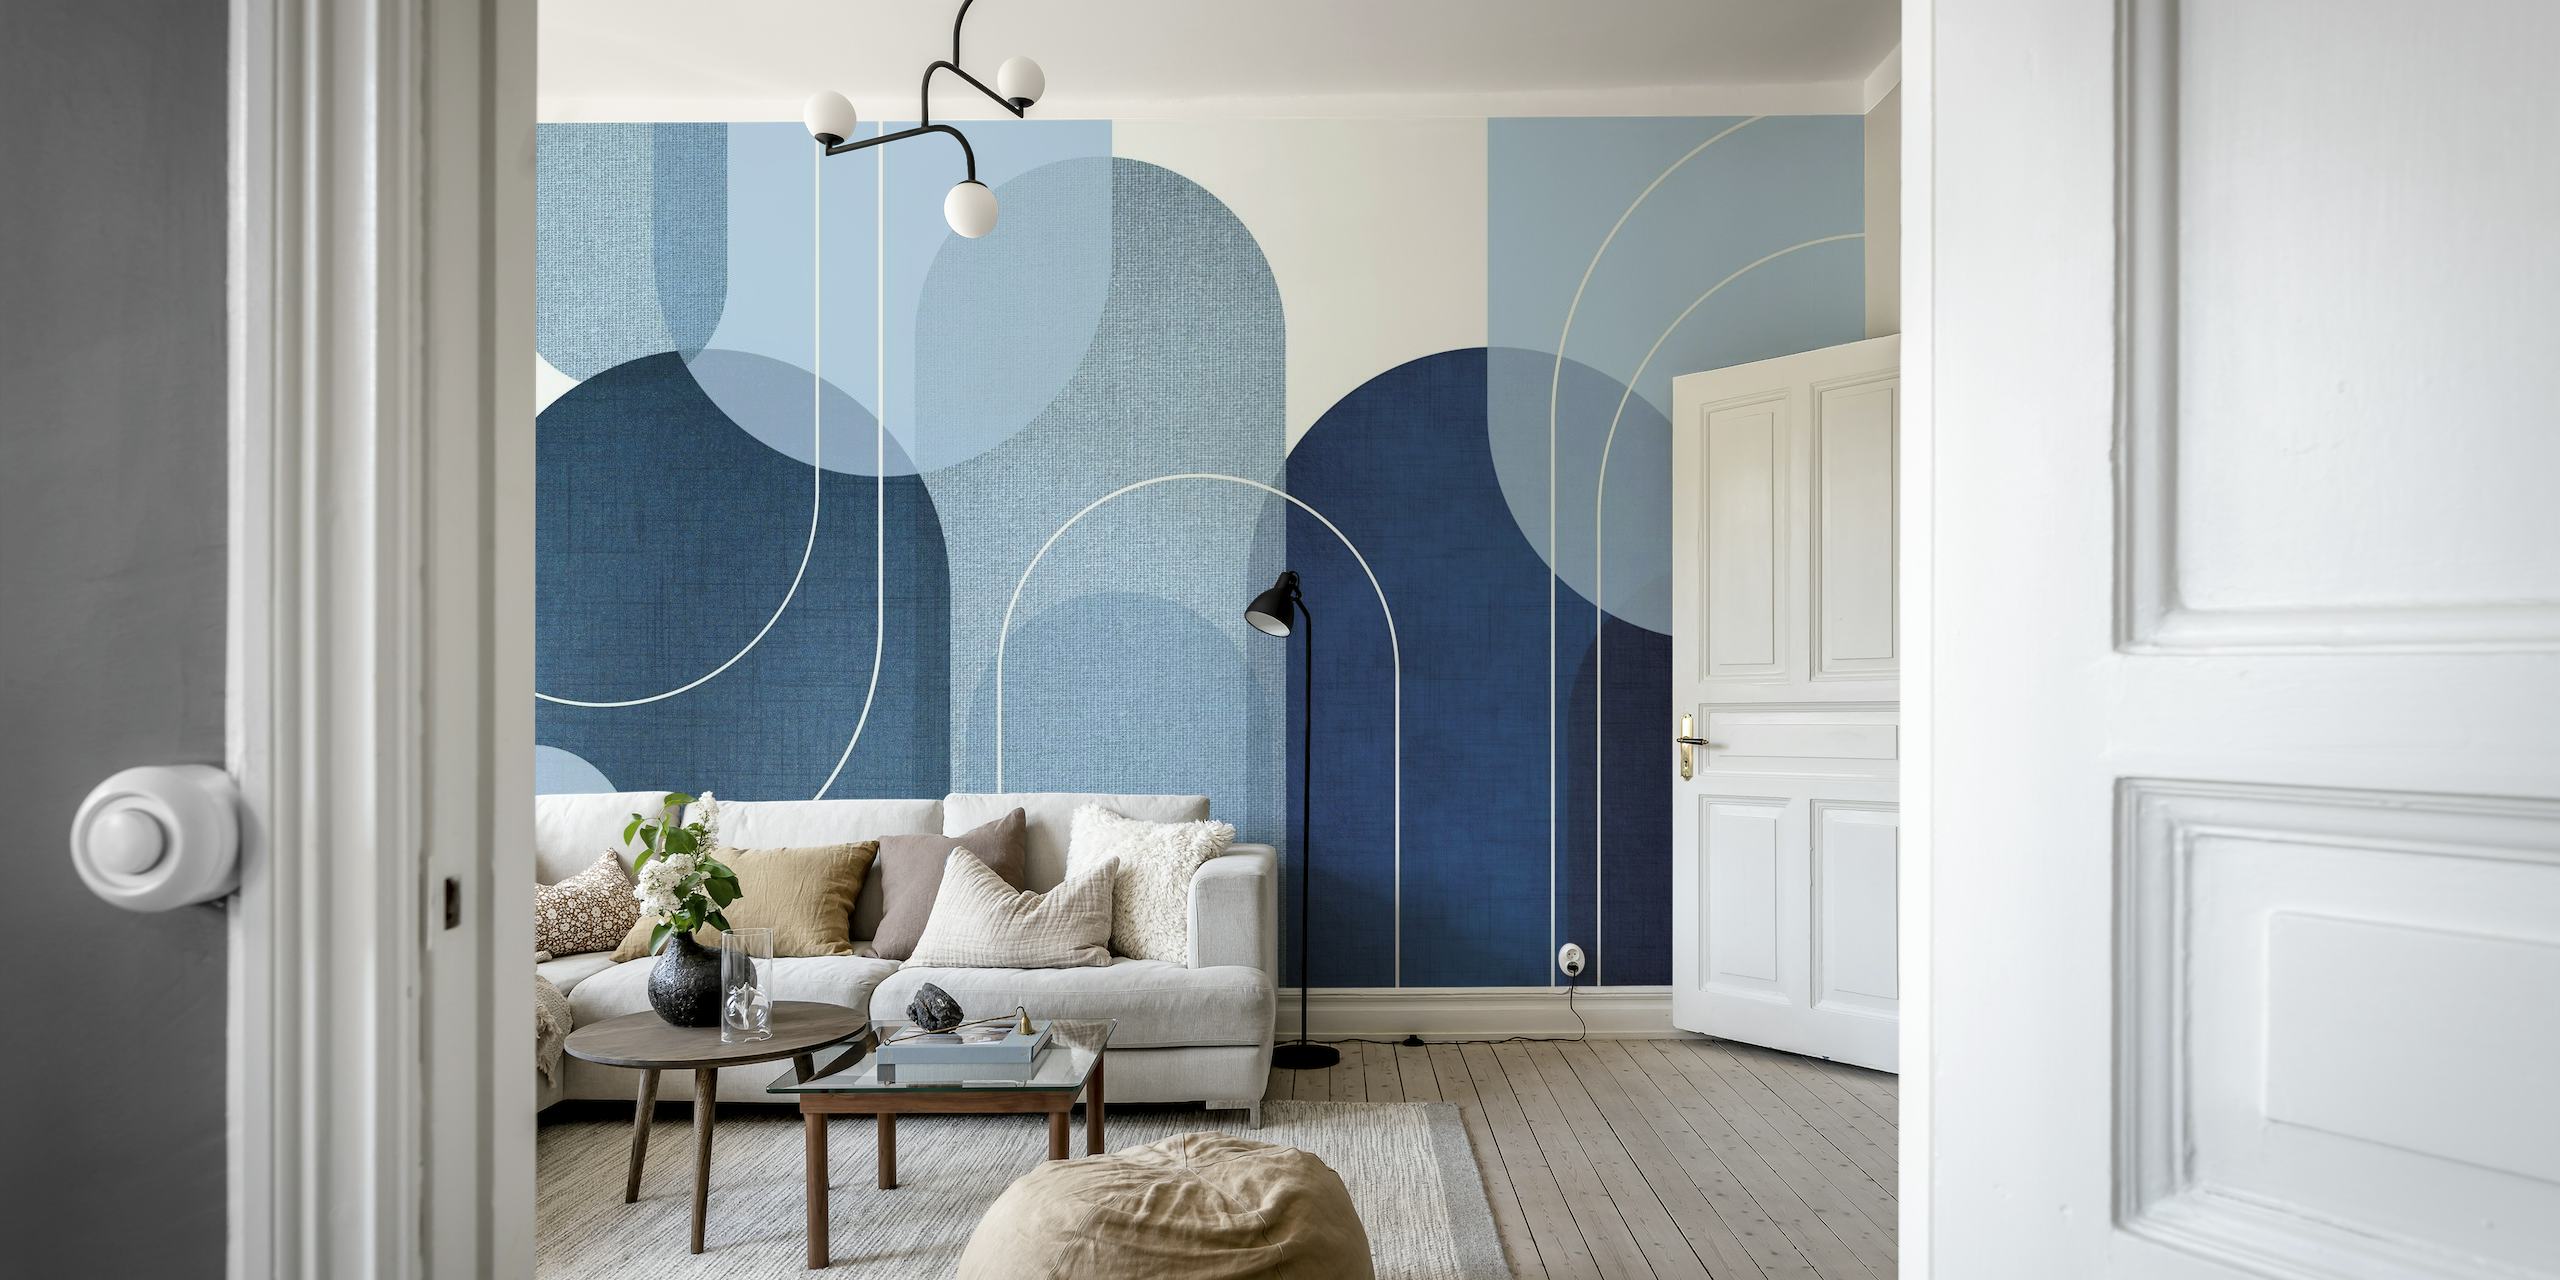 Muurschildering met abstracte geometrische bogen in blauwtinten